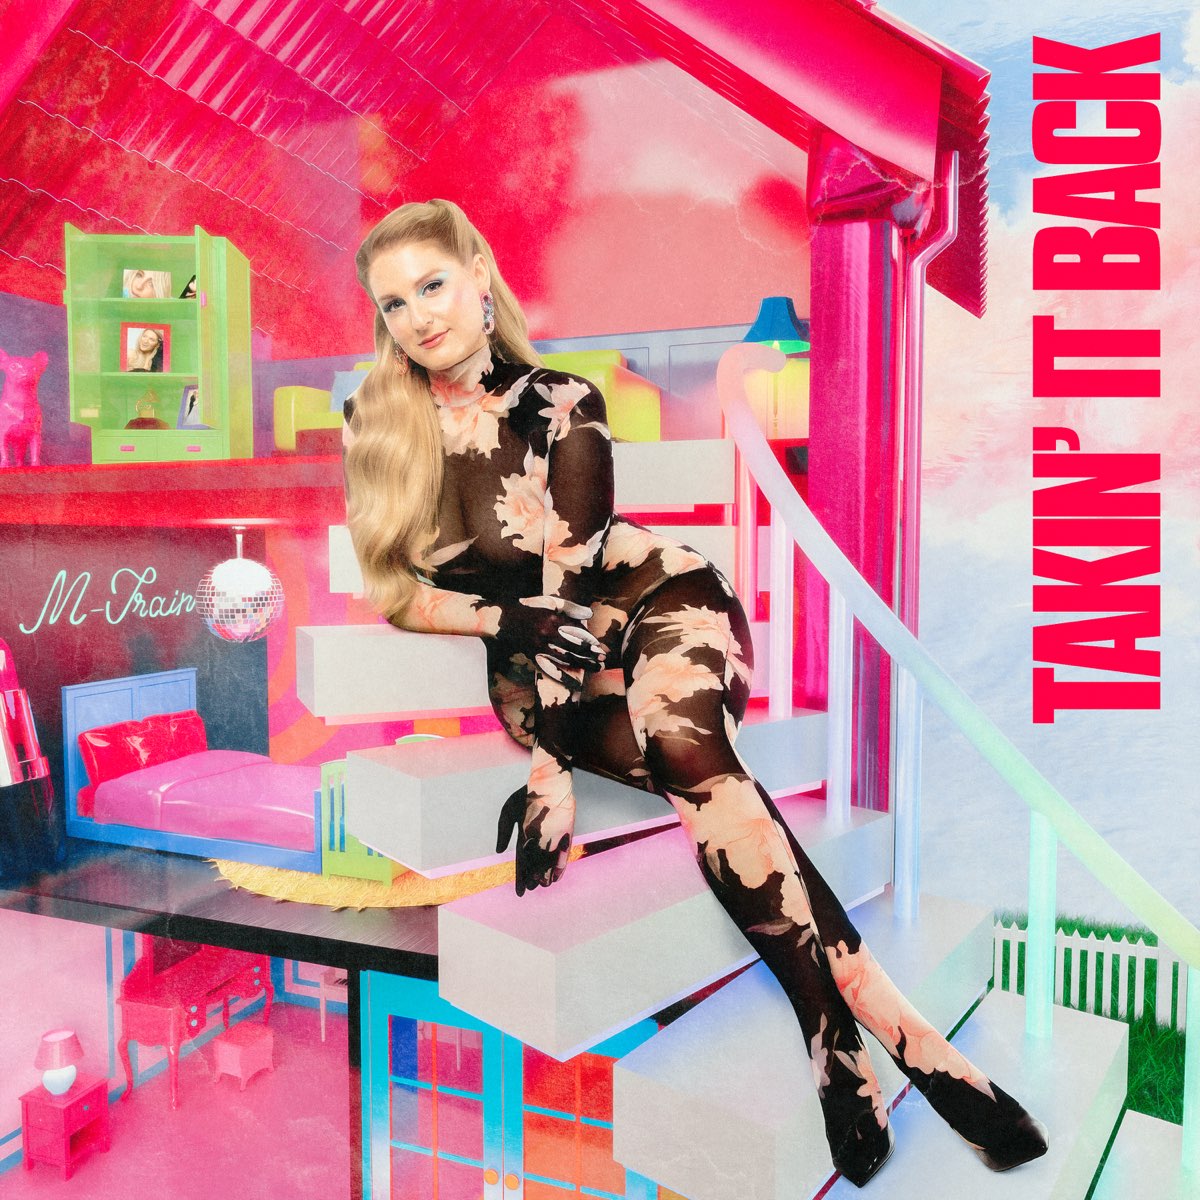 Takin' It Back (Deluxe) - Album by Meghan Trainor - Apple Music